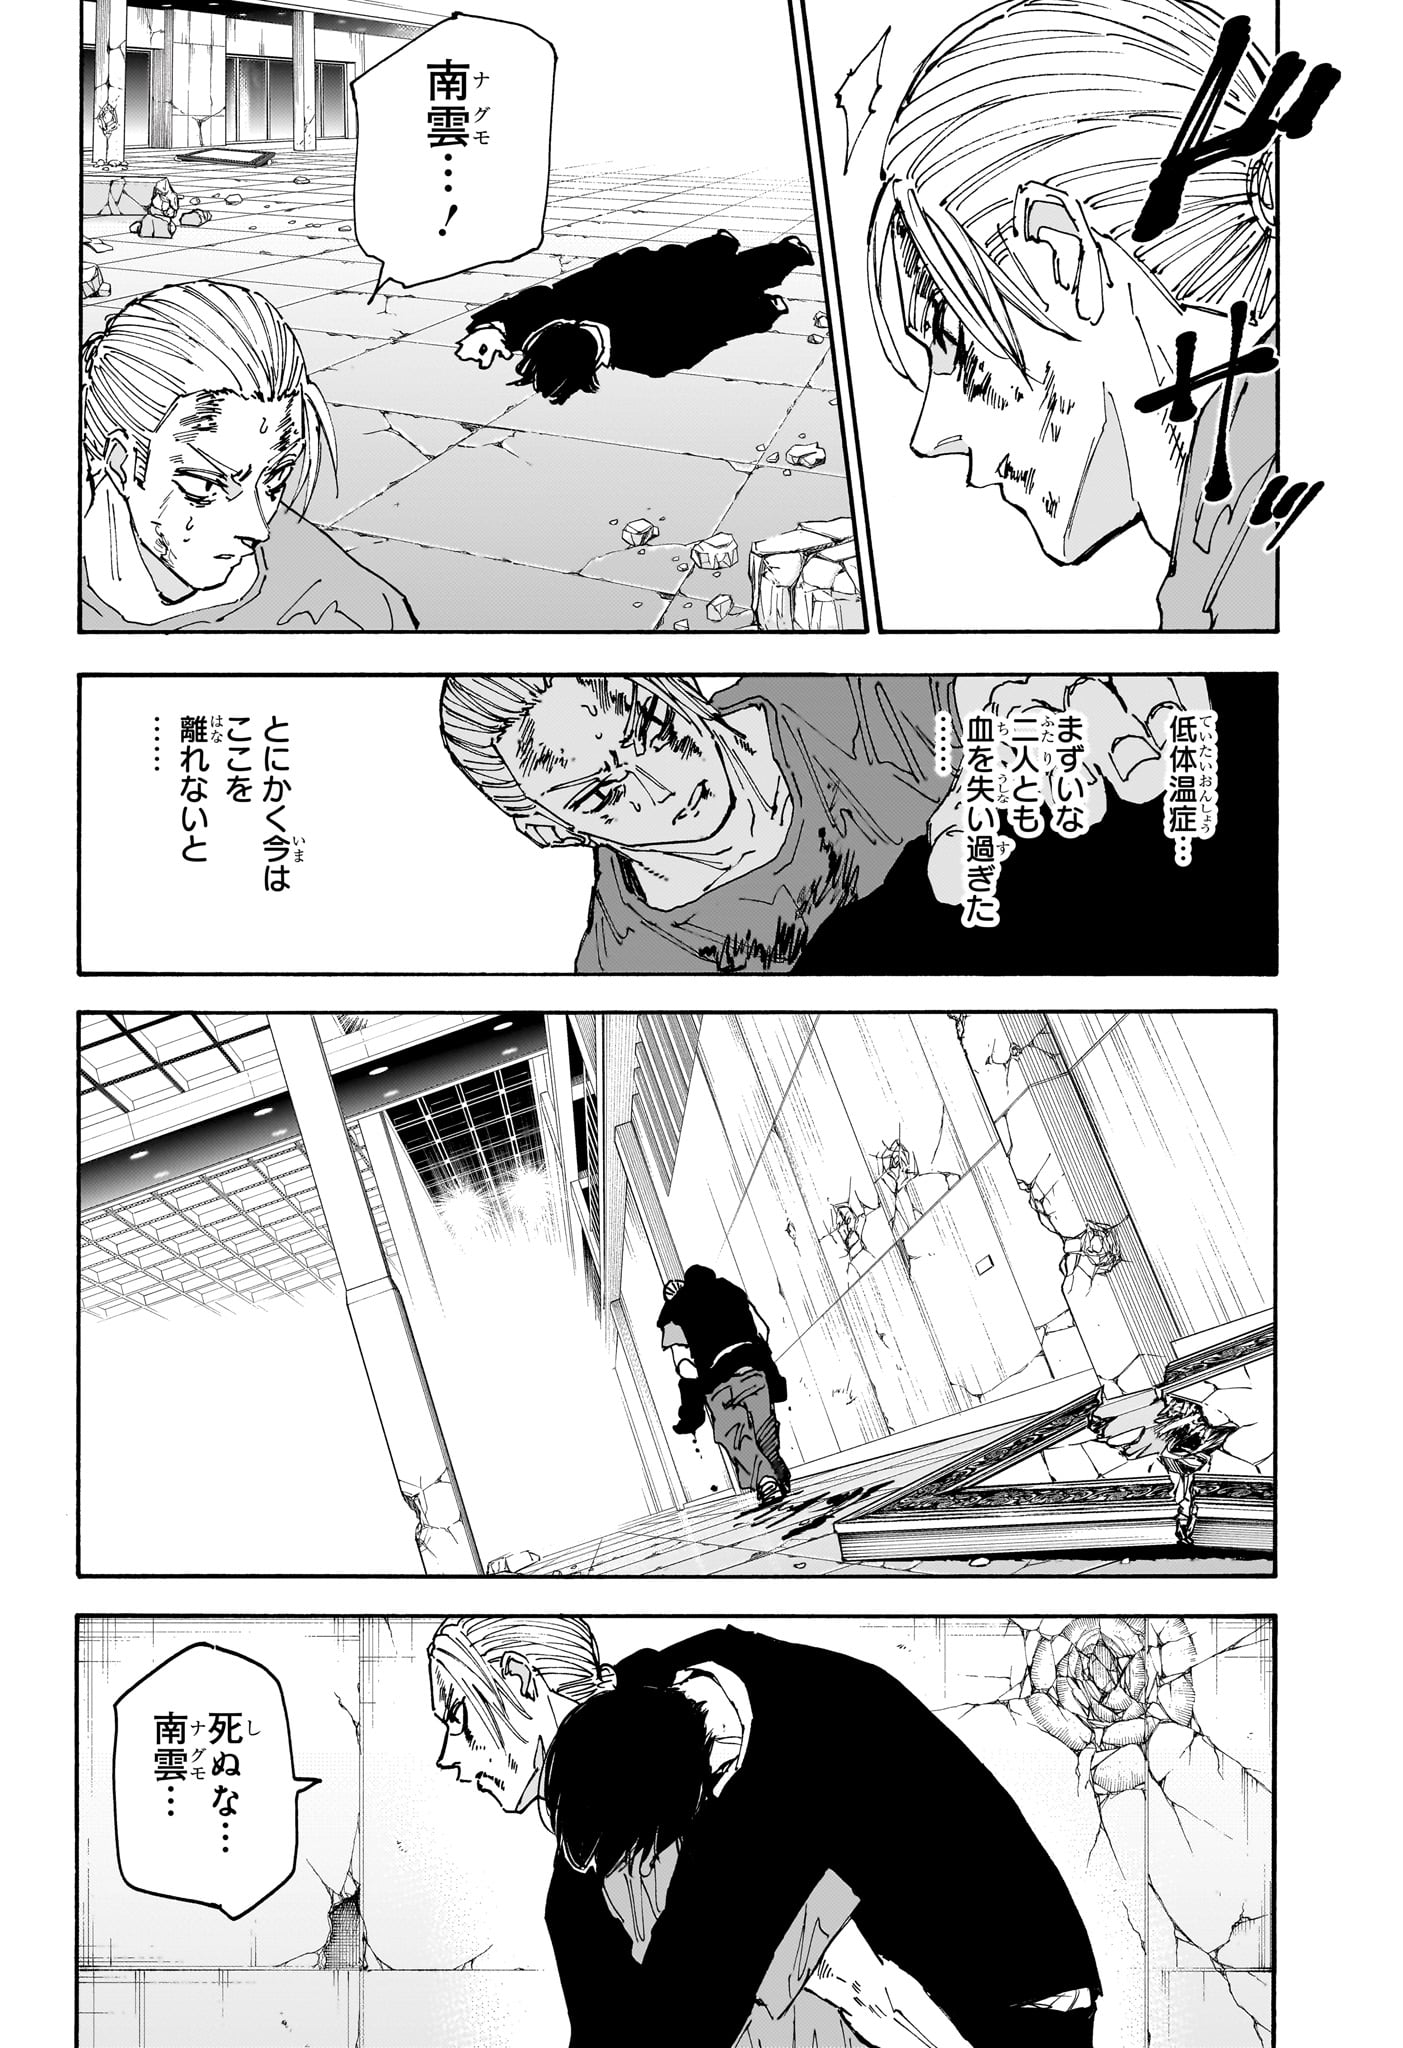 Sakamoto Days - Chapter 168 - Page 4